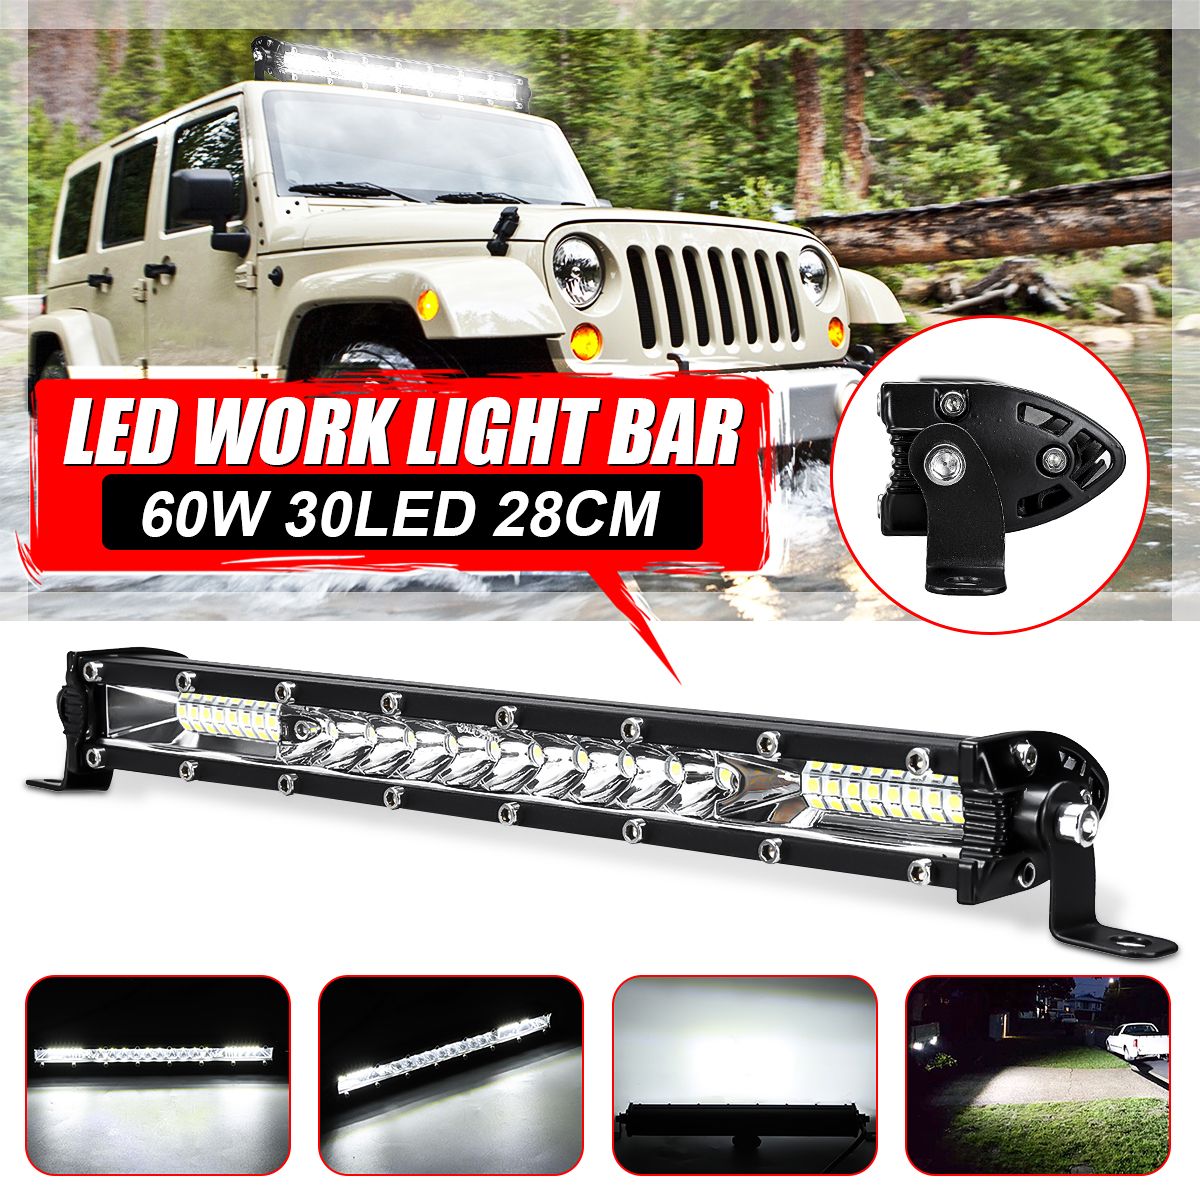 60W-30LED-Work-Light-Bar-Spot-Flood-Roof-Driving-Lamp-For-Offroad-SUV-ATV-UTV-4WD-1631276